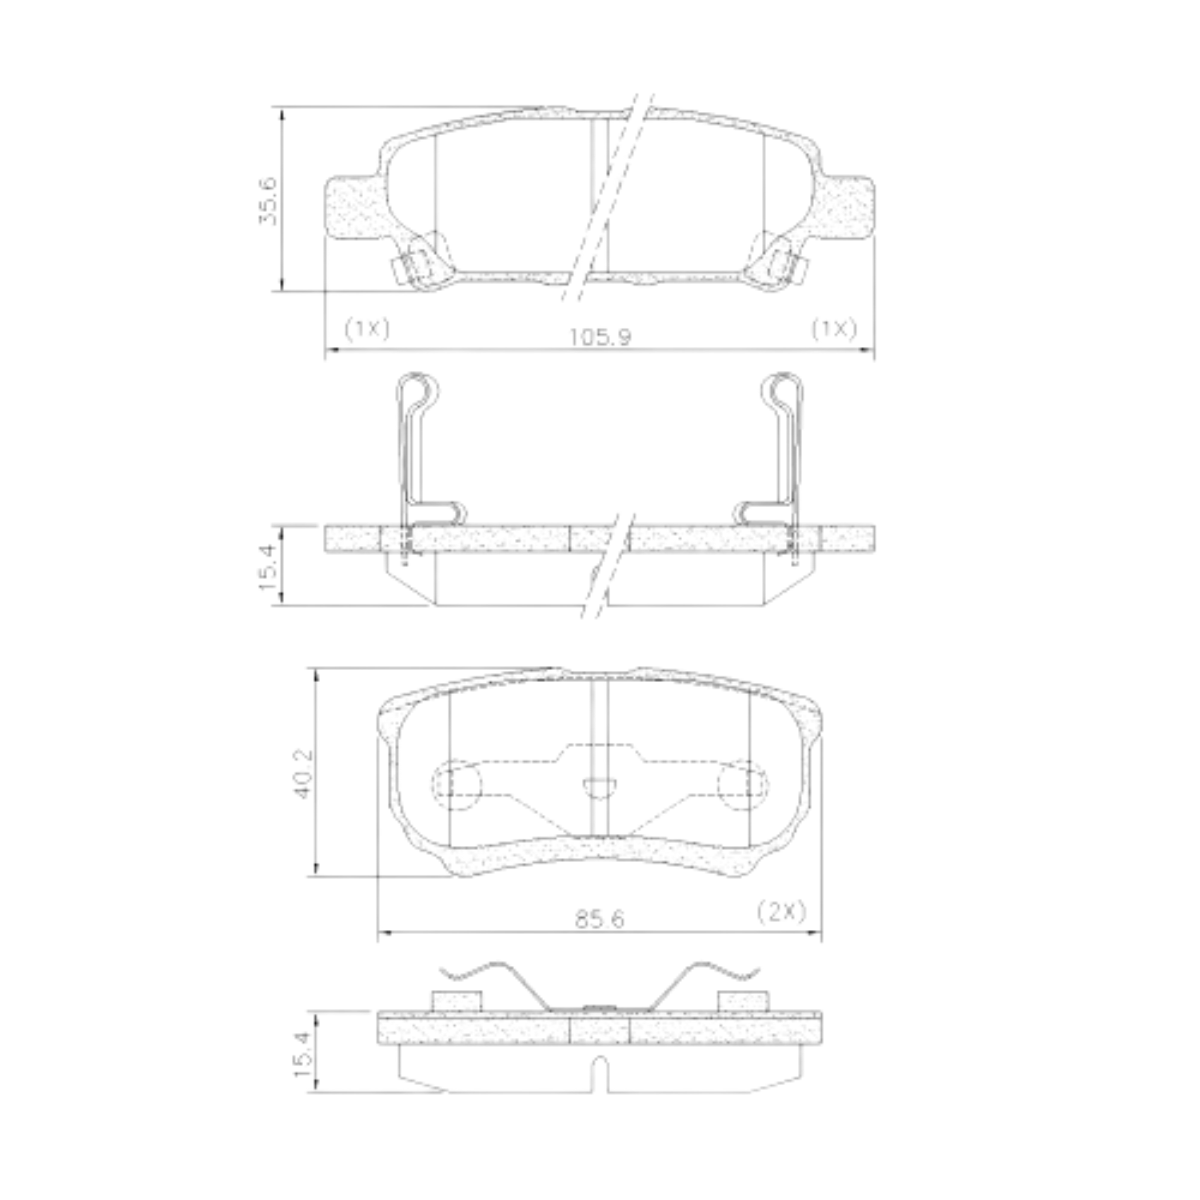 Pastilha Freio Mitsubishi Lancer 2.0 16v Hle Cvt 2015 Ate 2017 Traseira Sistema Akebono Fras-le Pd/723